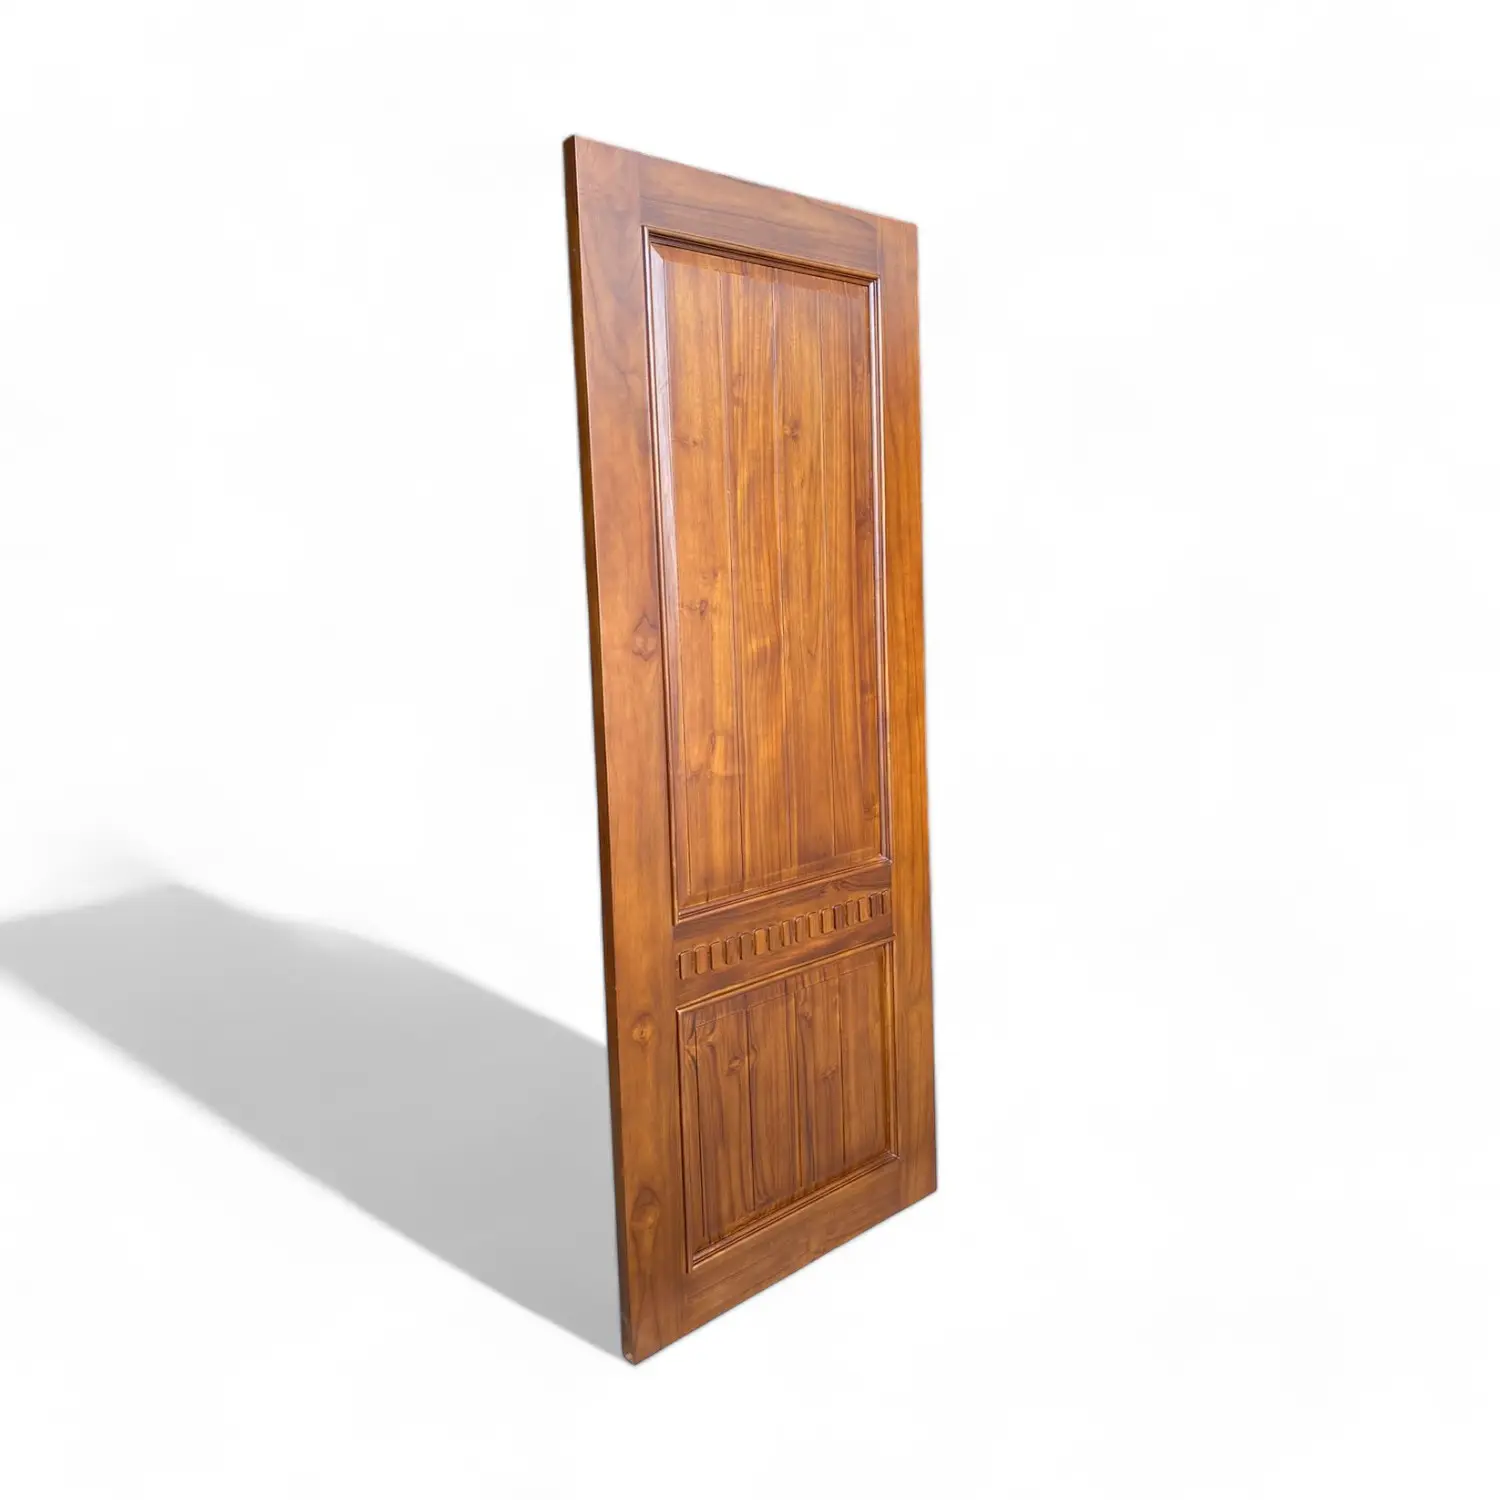 Best Quality of Solid Teak Wood Main Door in Walnut Color Wooden Interior Room Door For Home Hotel Villa Residential